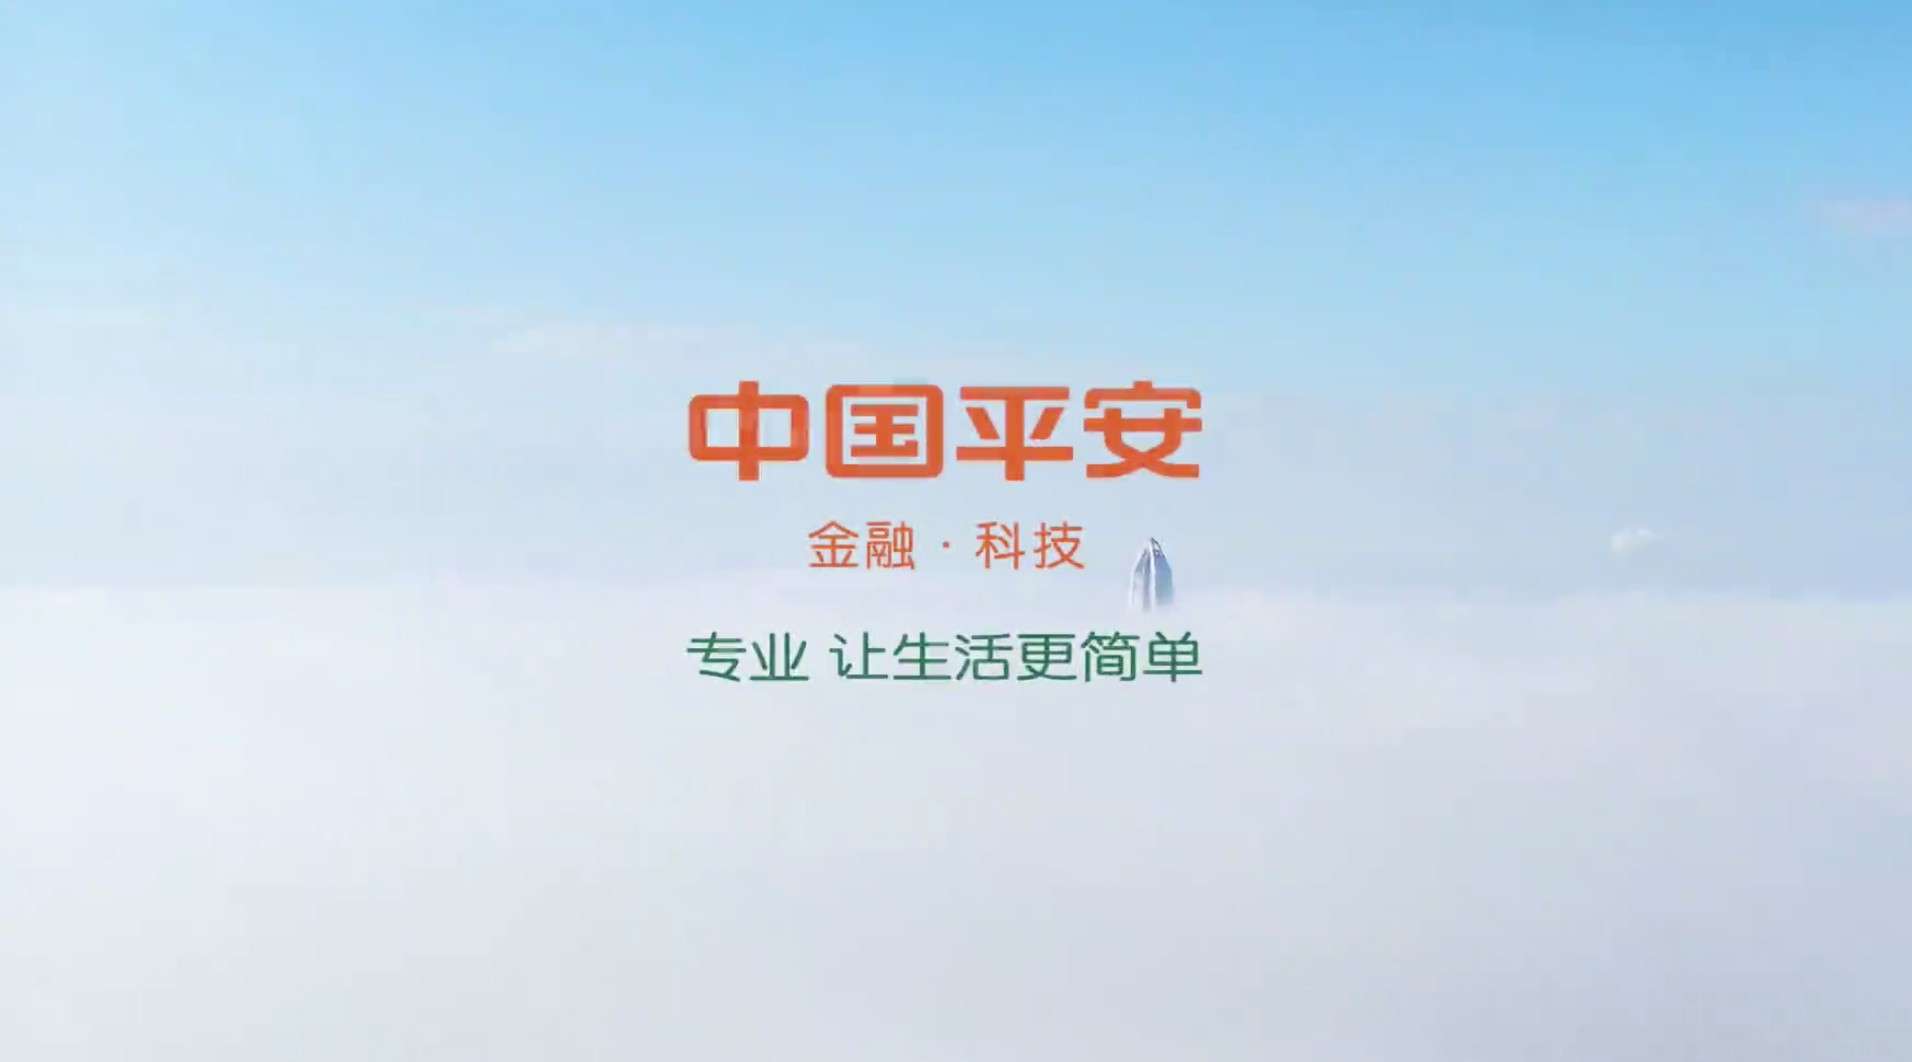 中国平安2020官方宣传片